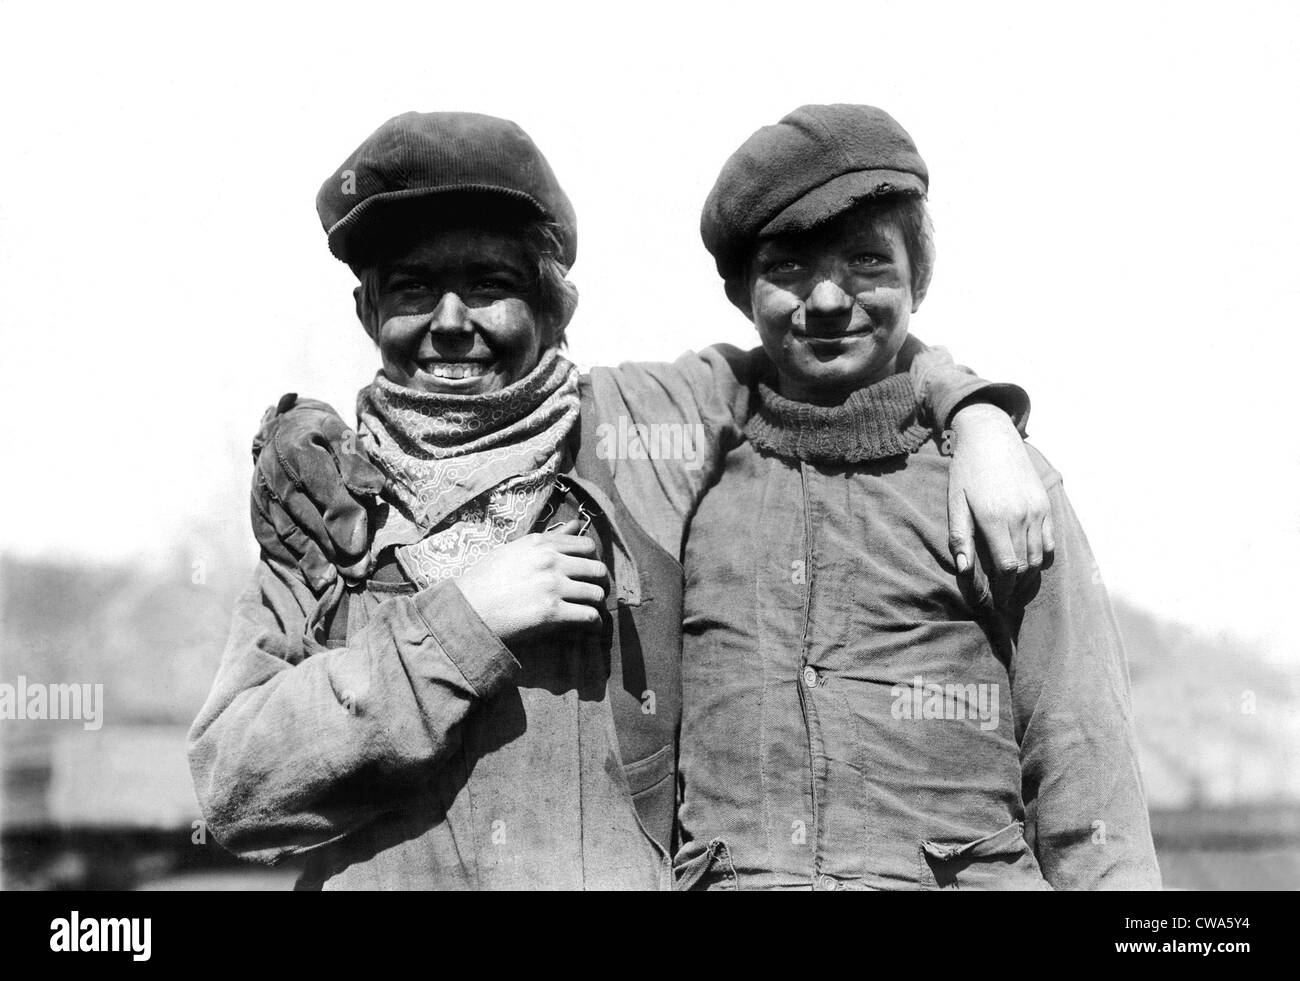 Mars 19,1912. Disjoncteur typique des garçons dans la mine de charbon de Pennsylvanie régions.. Avec la permission de la CSU : Archives / Everett Collection Banque D'Images